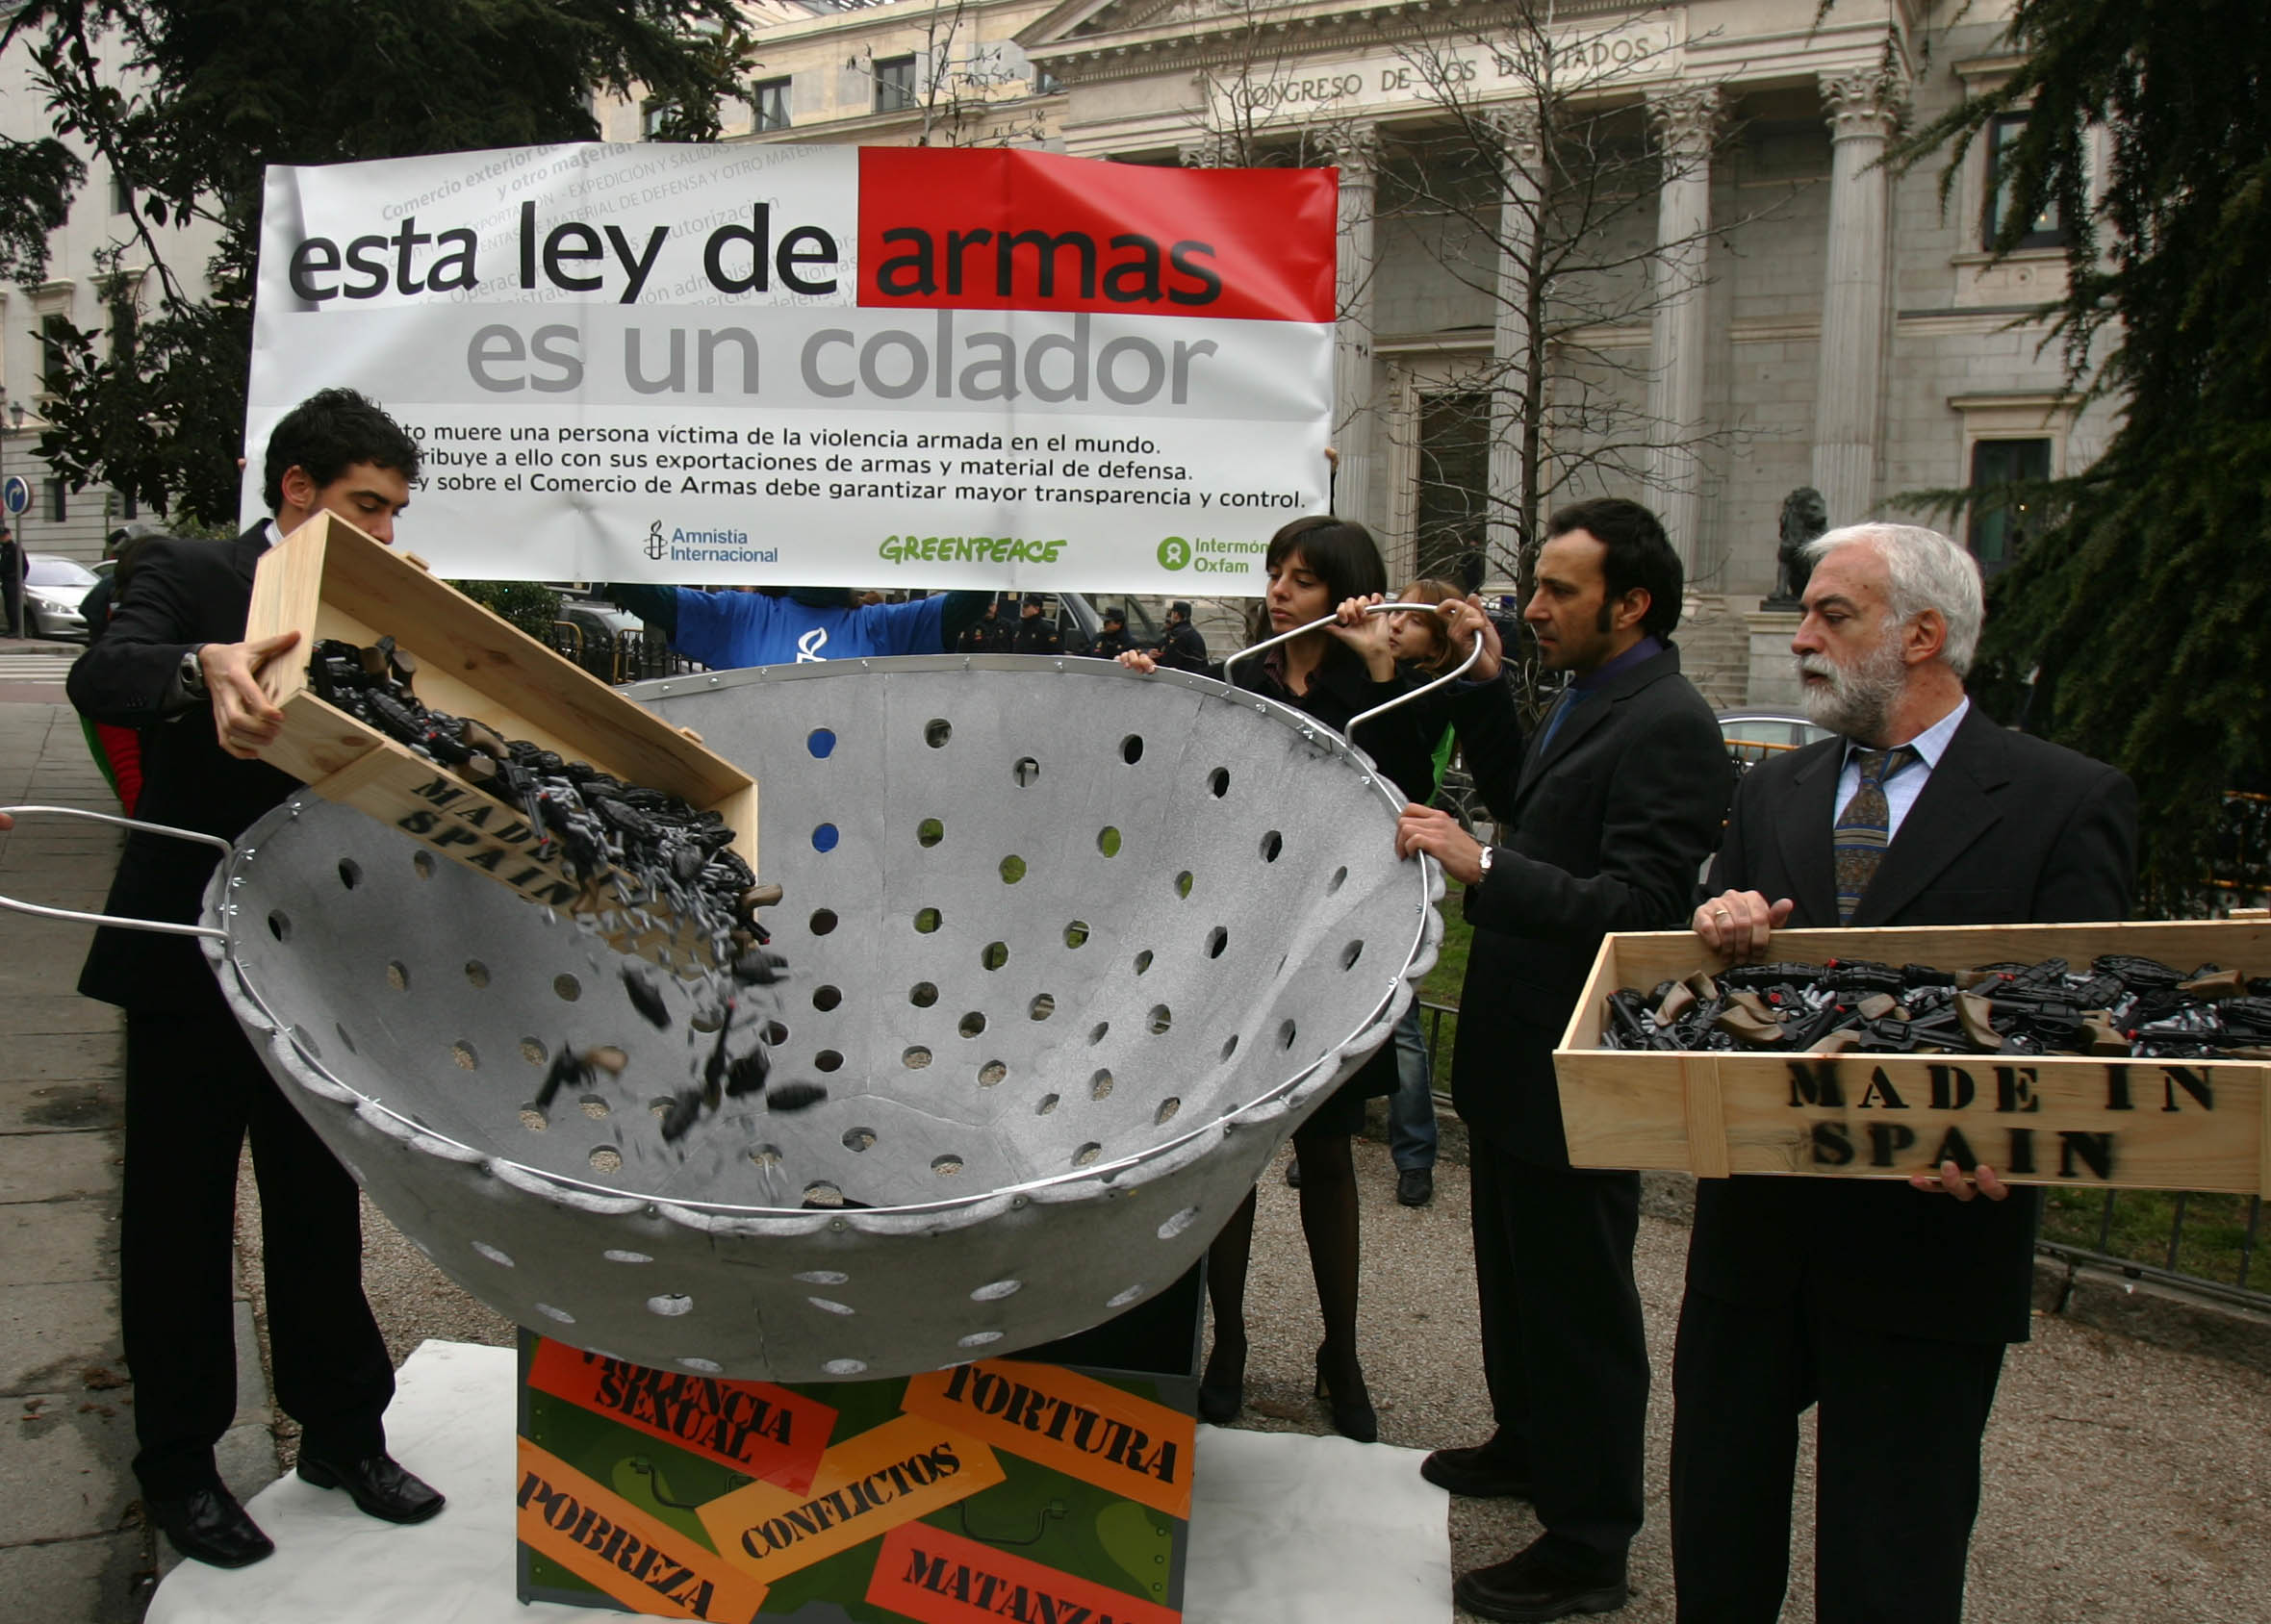 Acto simbólico de Amnistía Internacional, Intermón Oxfam y Greenpeace frente al Congreso de los Diputados en Madrid